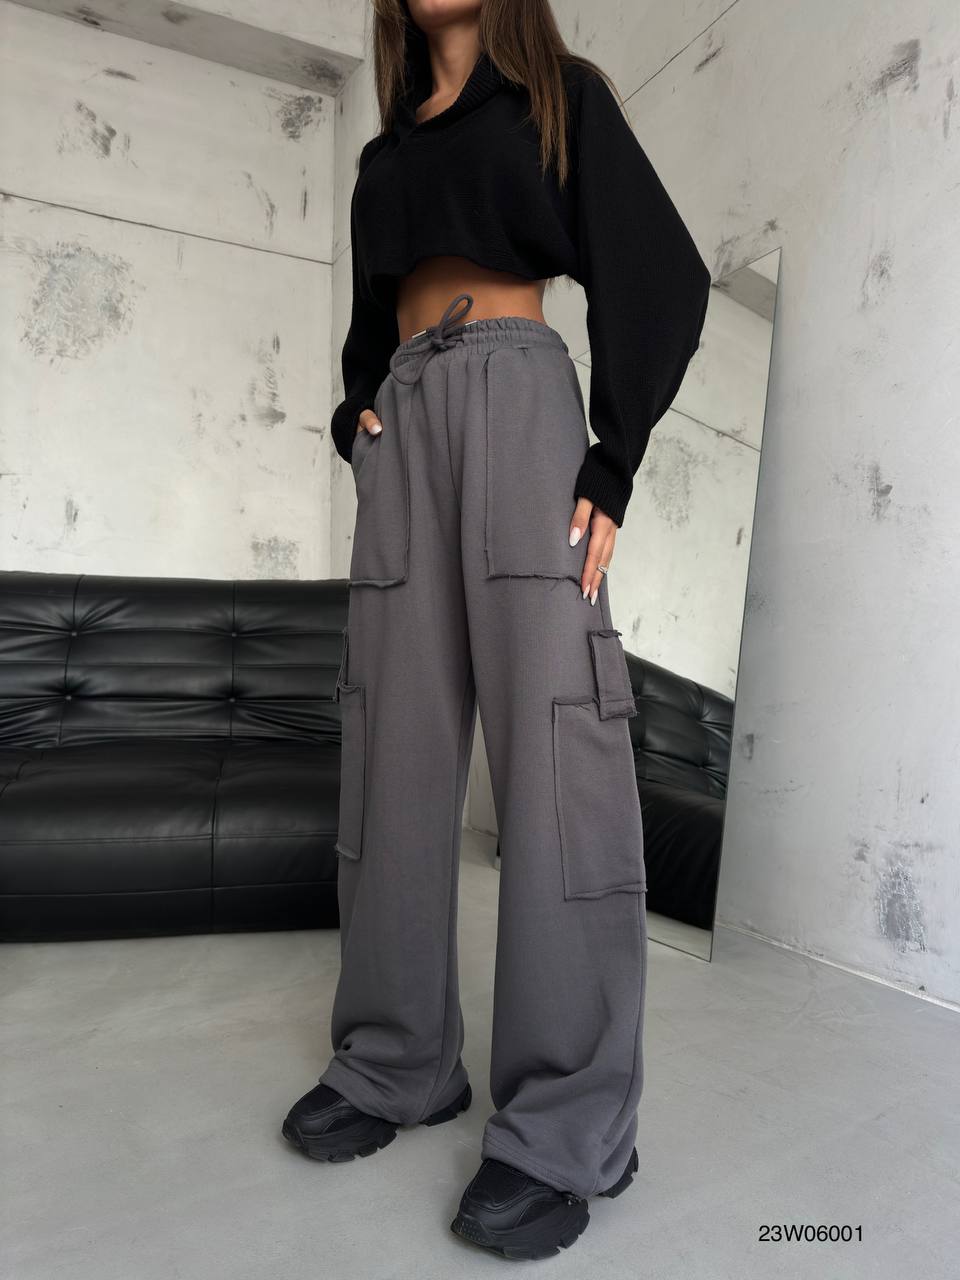 Дамски карго панталон Allti Grey  https://bvseductive.com/products/дамски-карго-панталон-allti-grey  модерен дамски карго панталон в сив цвят модерен дизайн, свободена кройка висока талия,за повече комфорт и стил идеално допълнение към ежедневния Ви гардероб